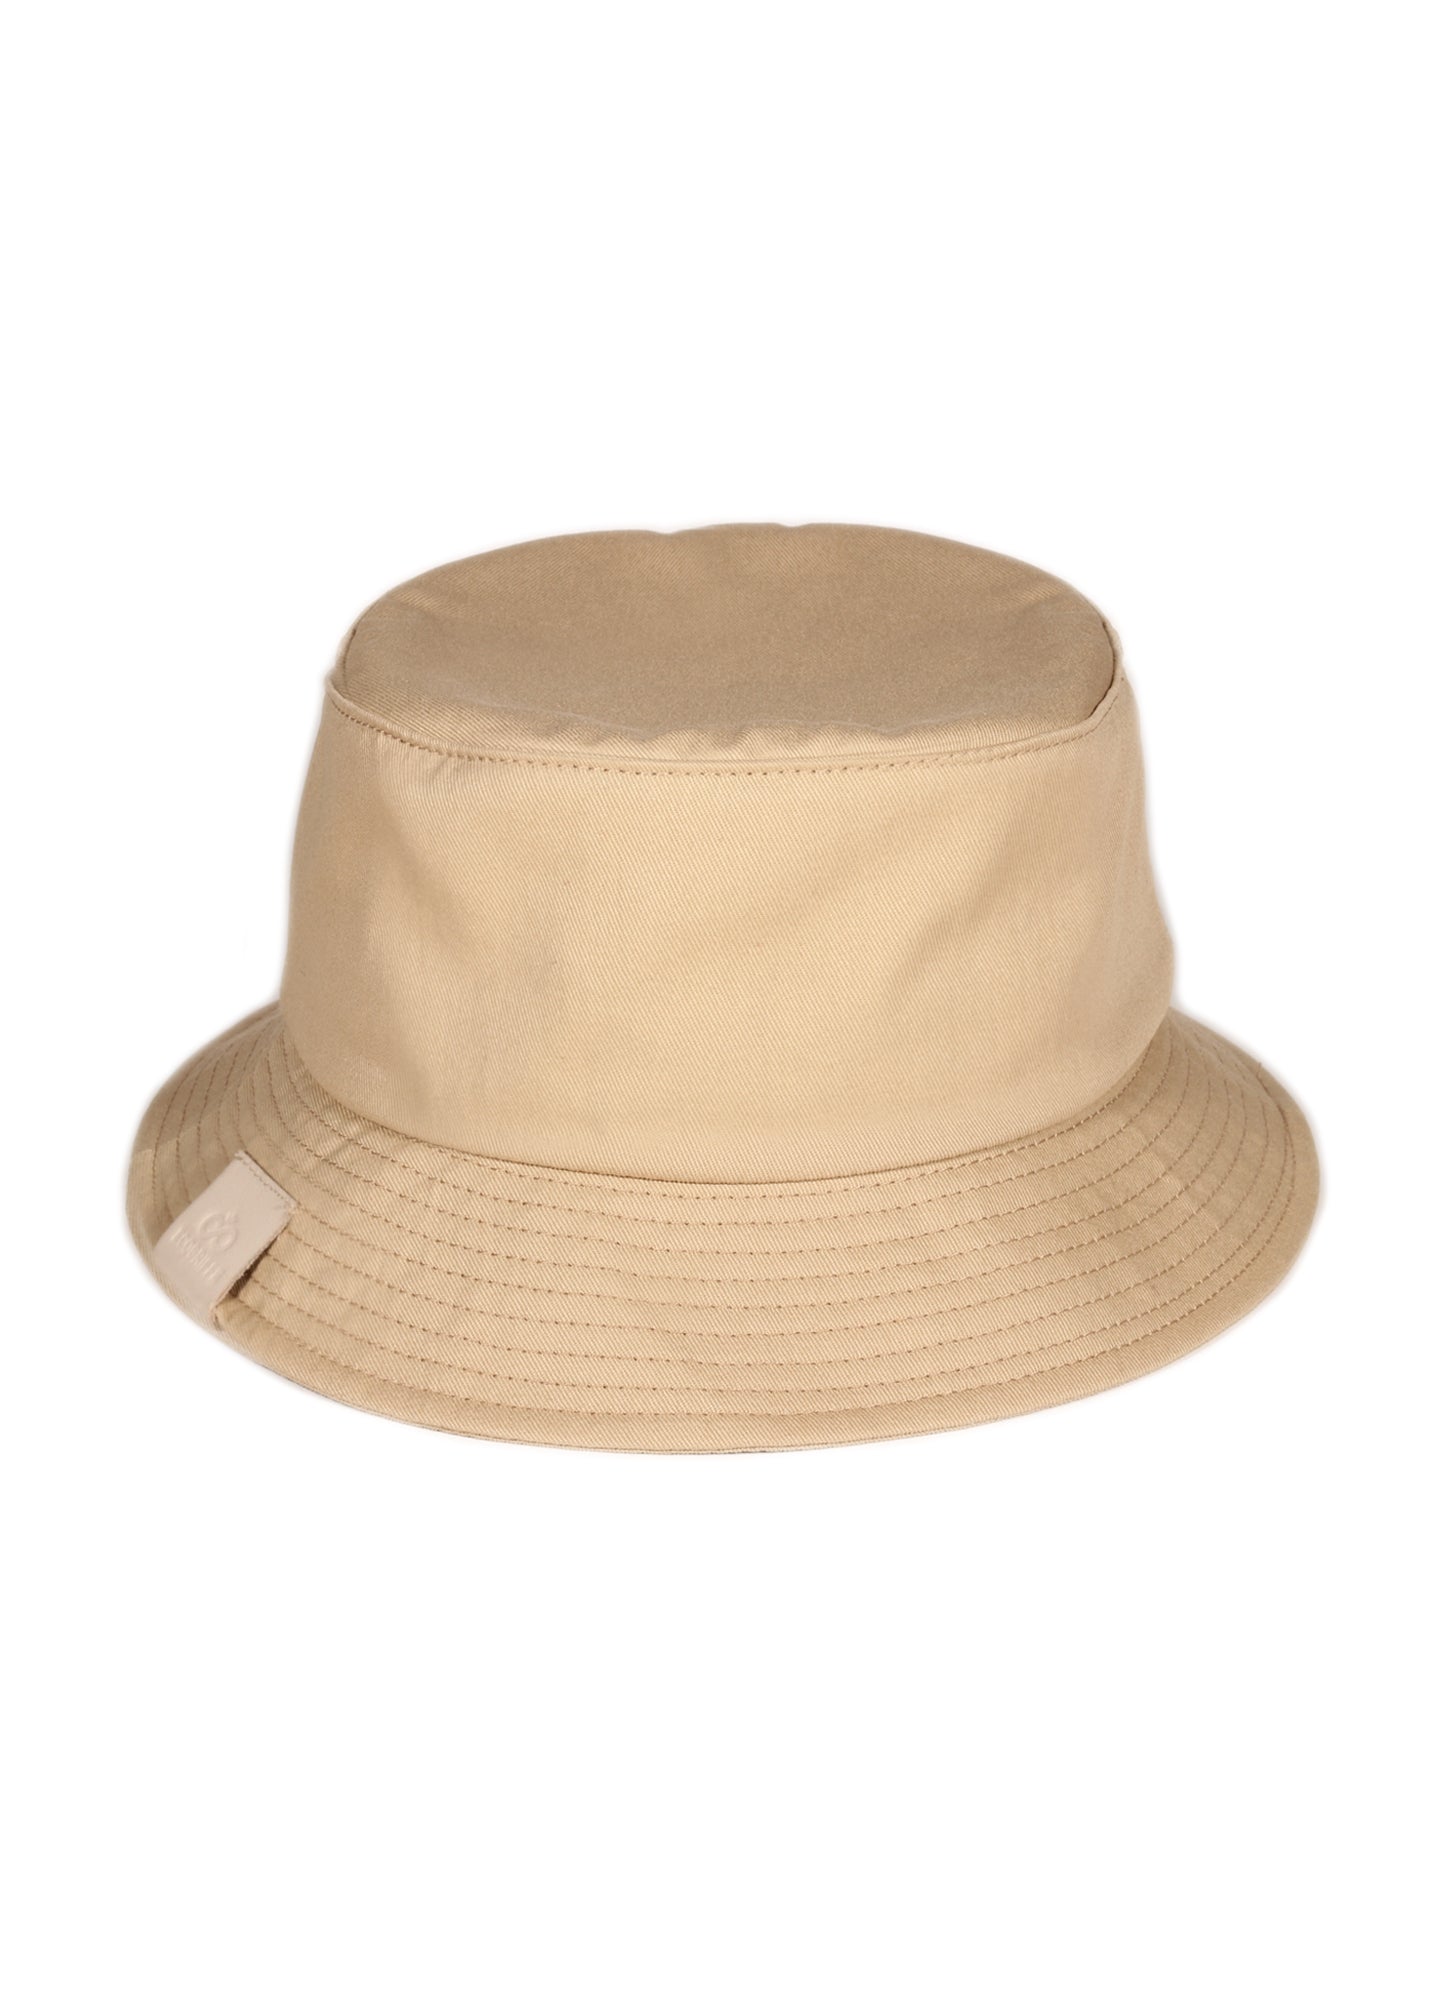 ecogriffe-bucket-hat-sable-etiquette-cuir-unisexe-OK